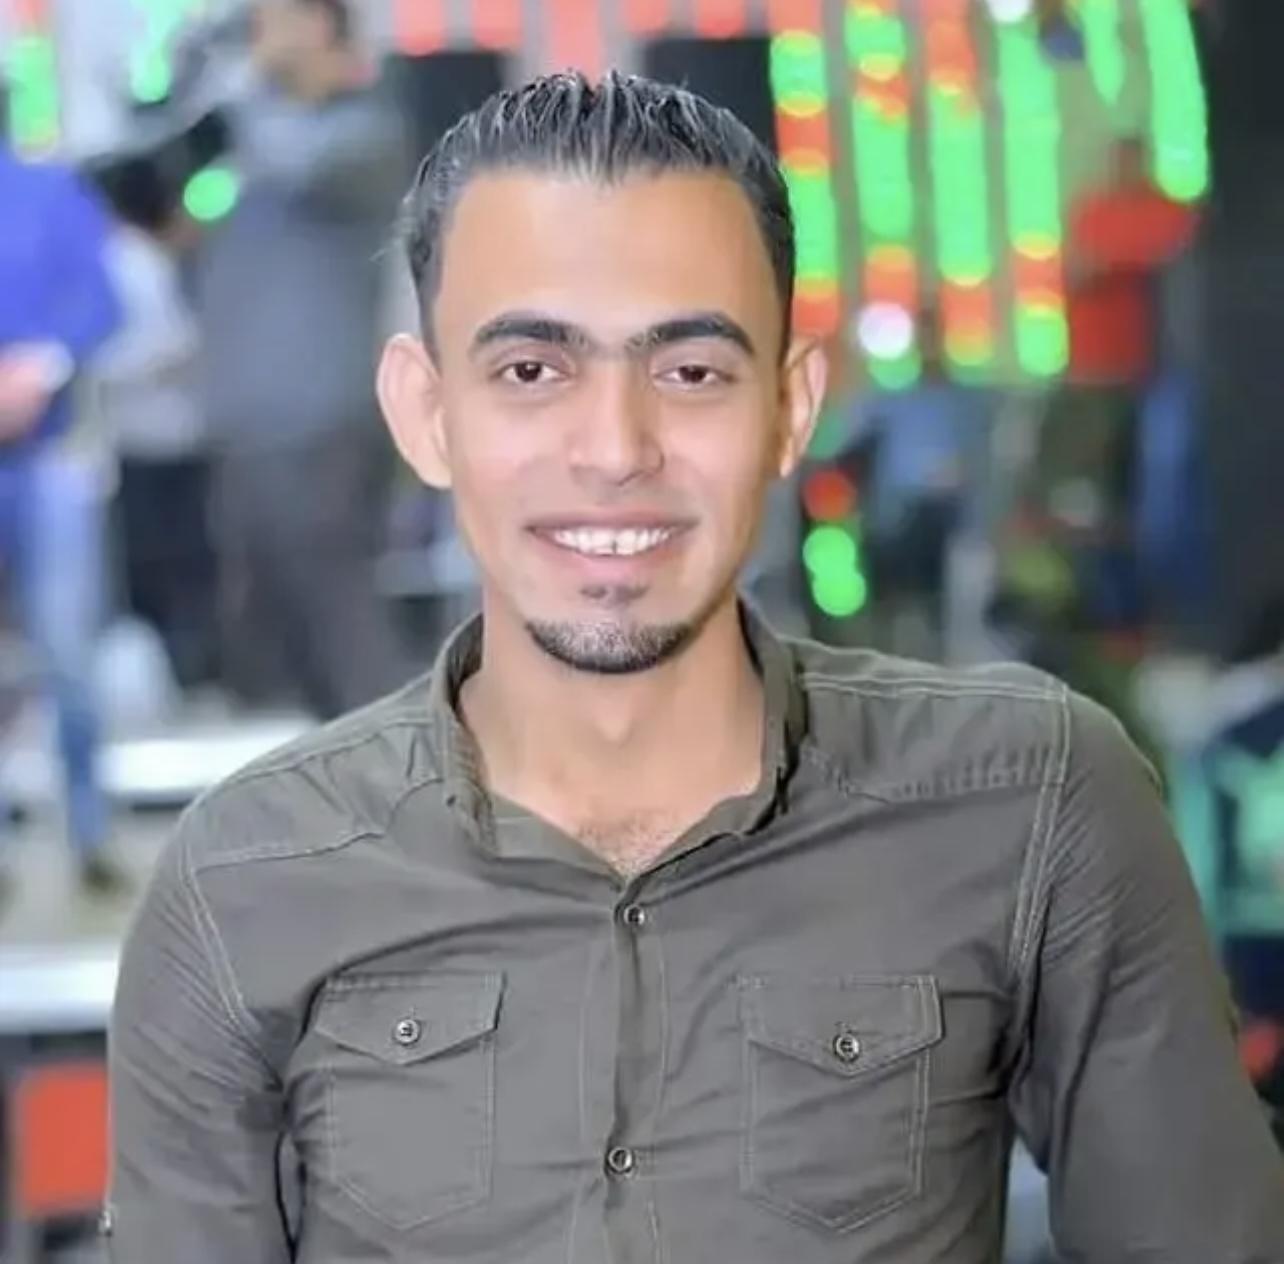 Morilec študenta Menoufia, Amani Al-Jazzar